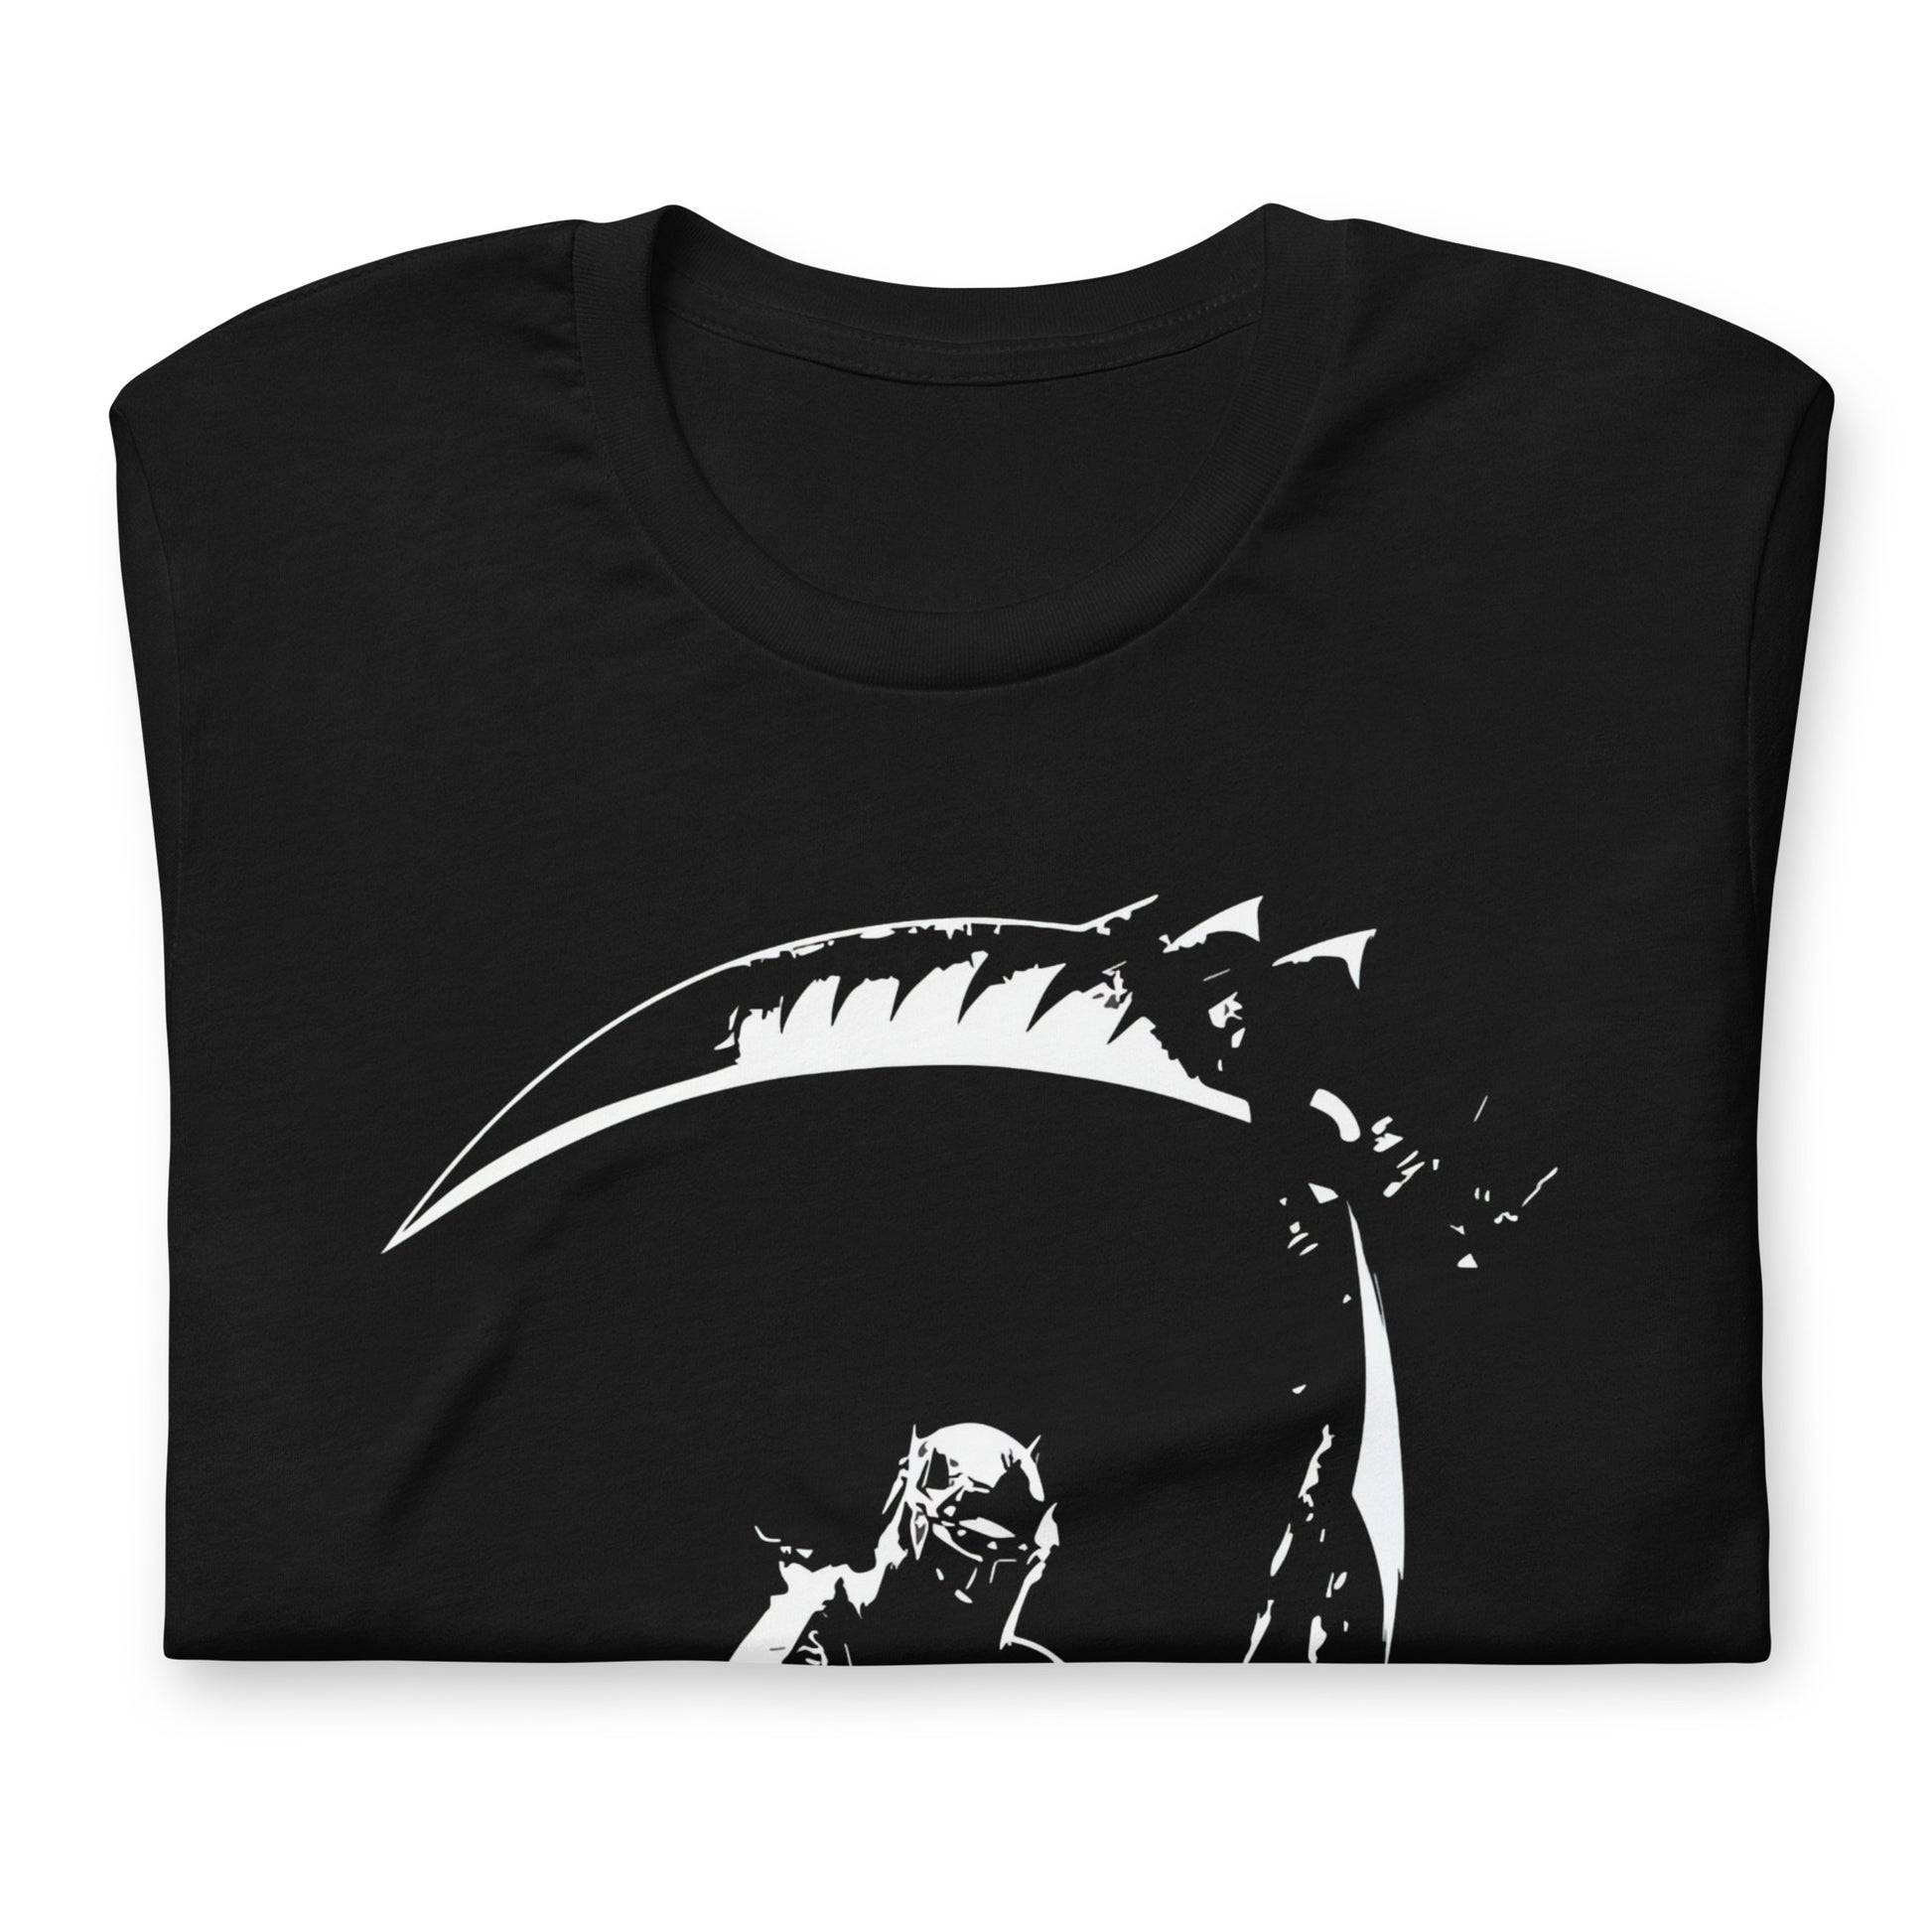 ¡Compra el mejor merchandising en Superstar! Encuentra diseños únicos y de alta calidad en camisetas únicas, Camiseta Dante's Inferno